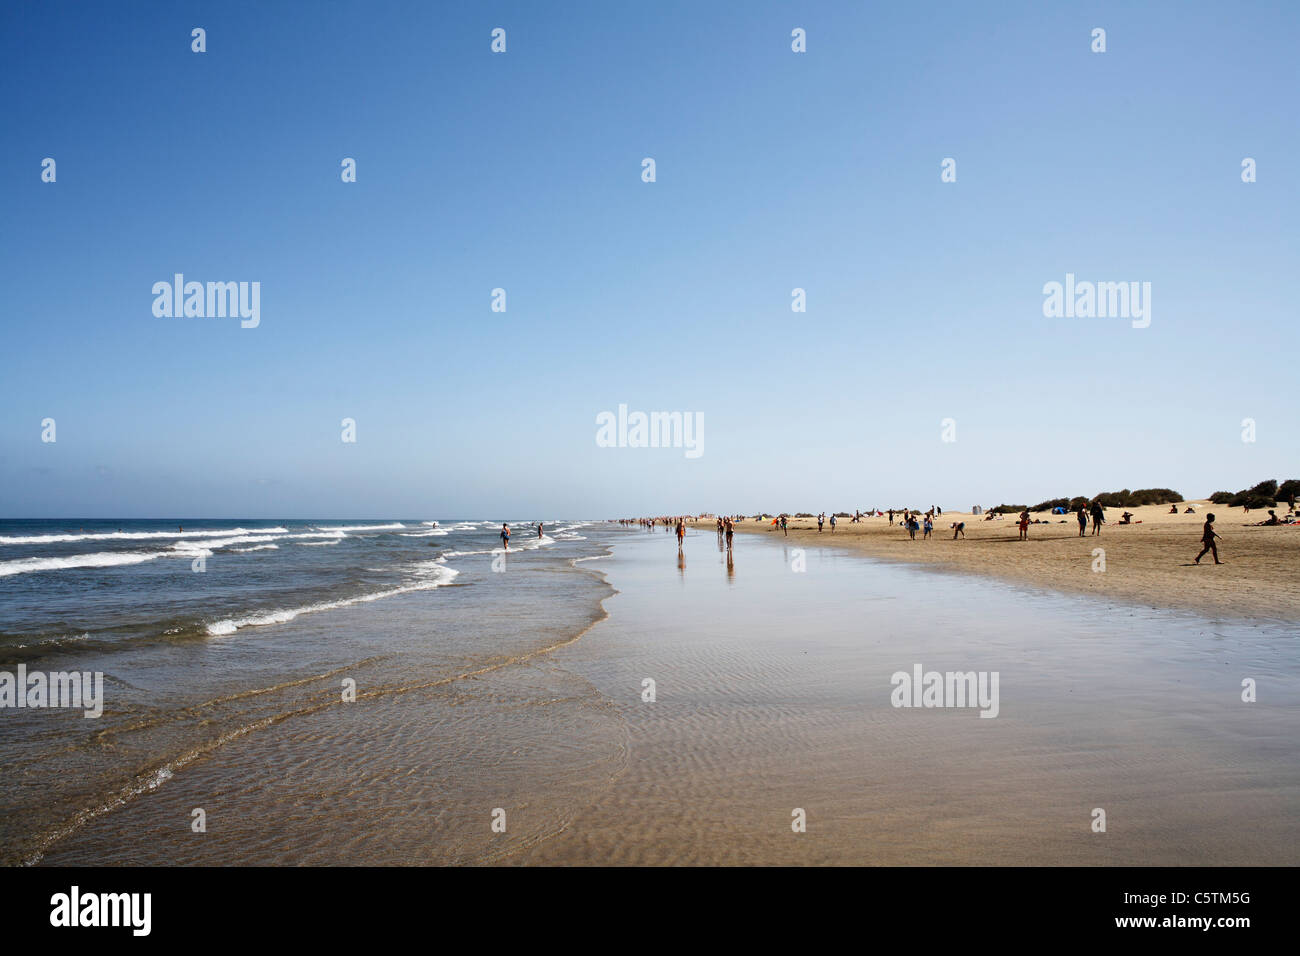 Spagna, Gran Canaria, Costa Canaria, Playa del Ingles, turistico sulla spiaggia Foto Stock